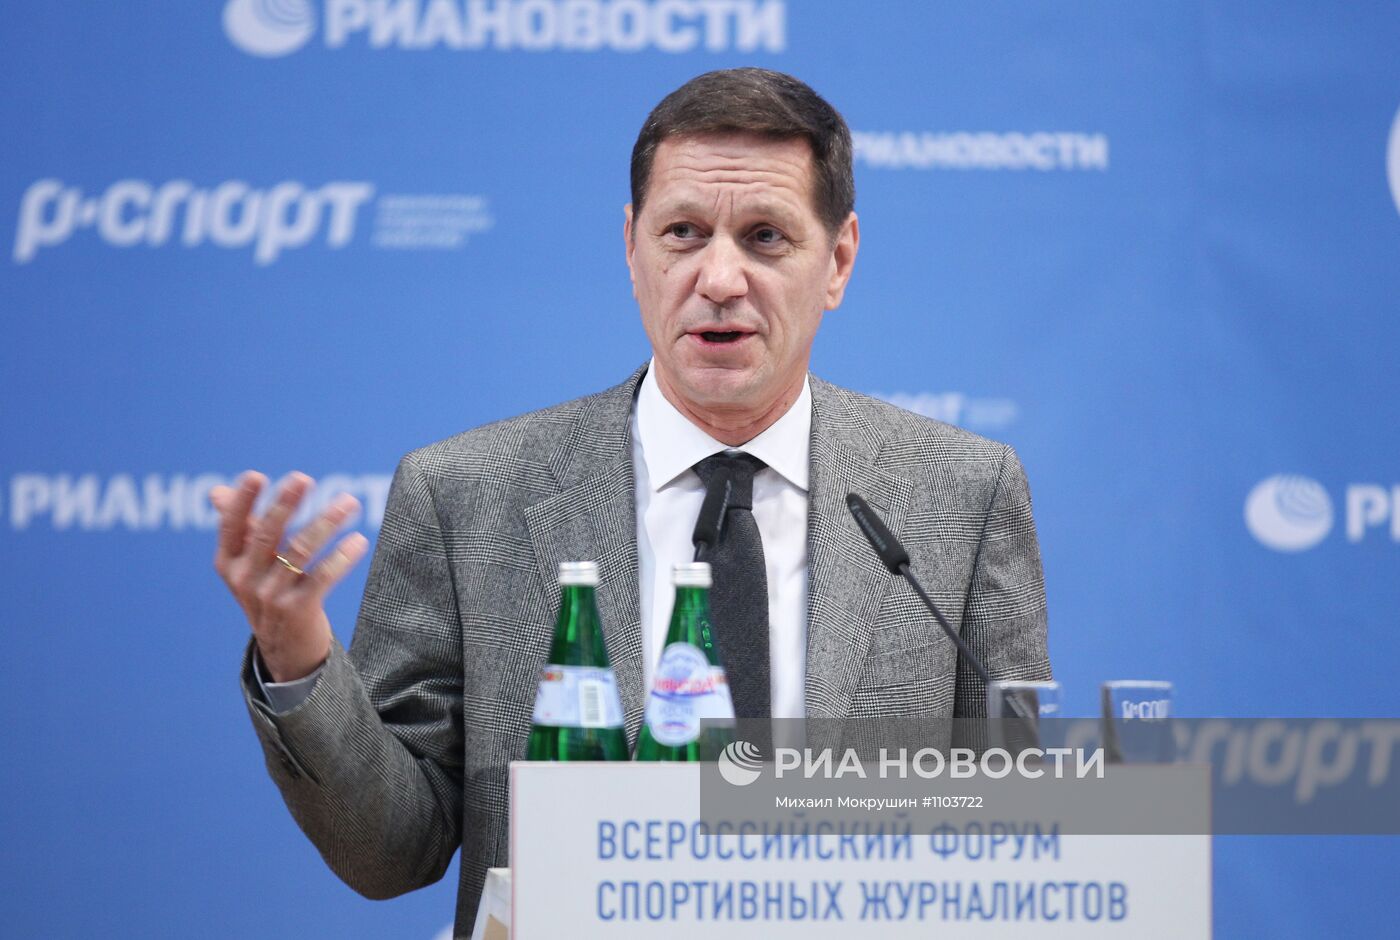 Первый Всероссийский форум спортивных журналистов